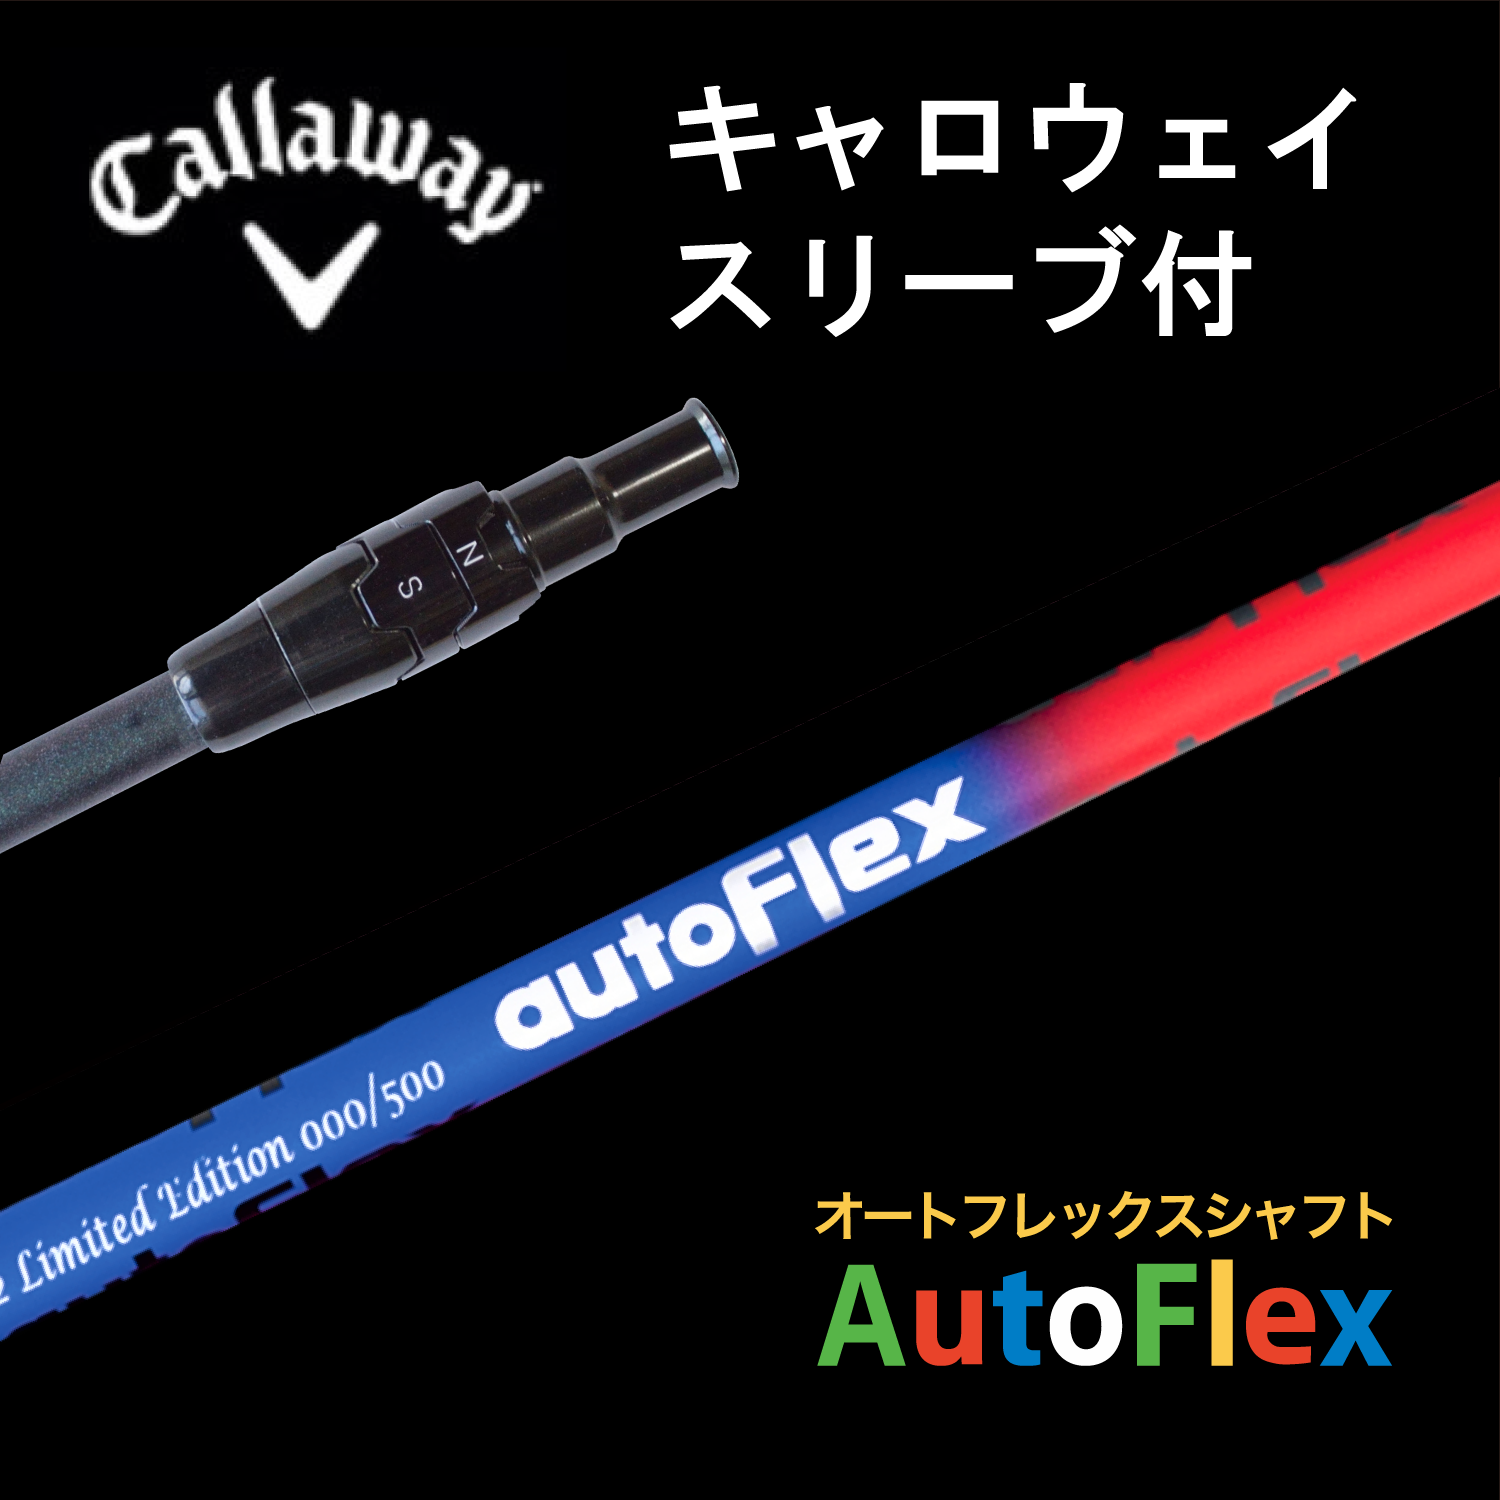 公式ストア】AutoFlex Shaft 限定版 Limited Edition キャロウェイ